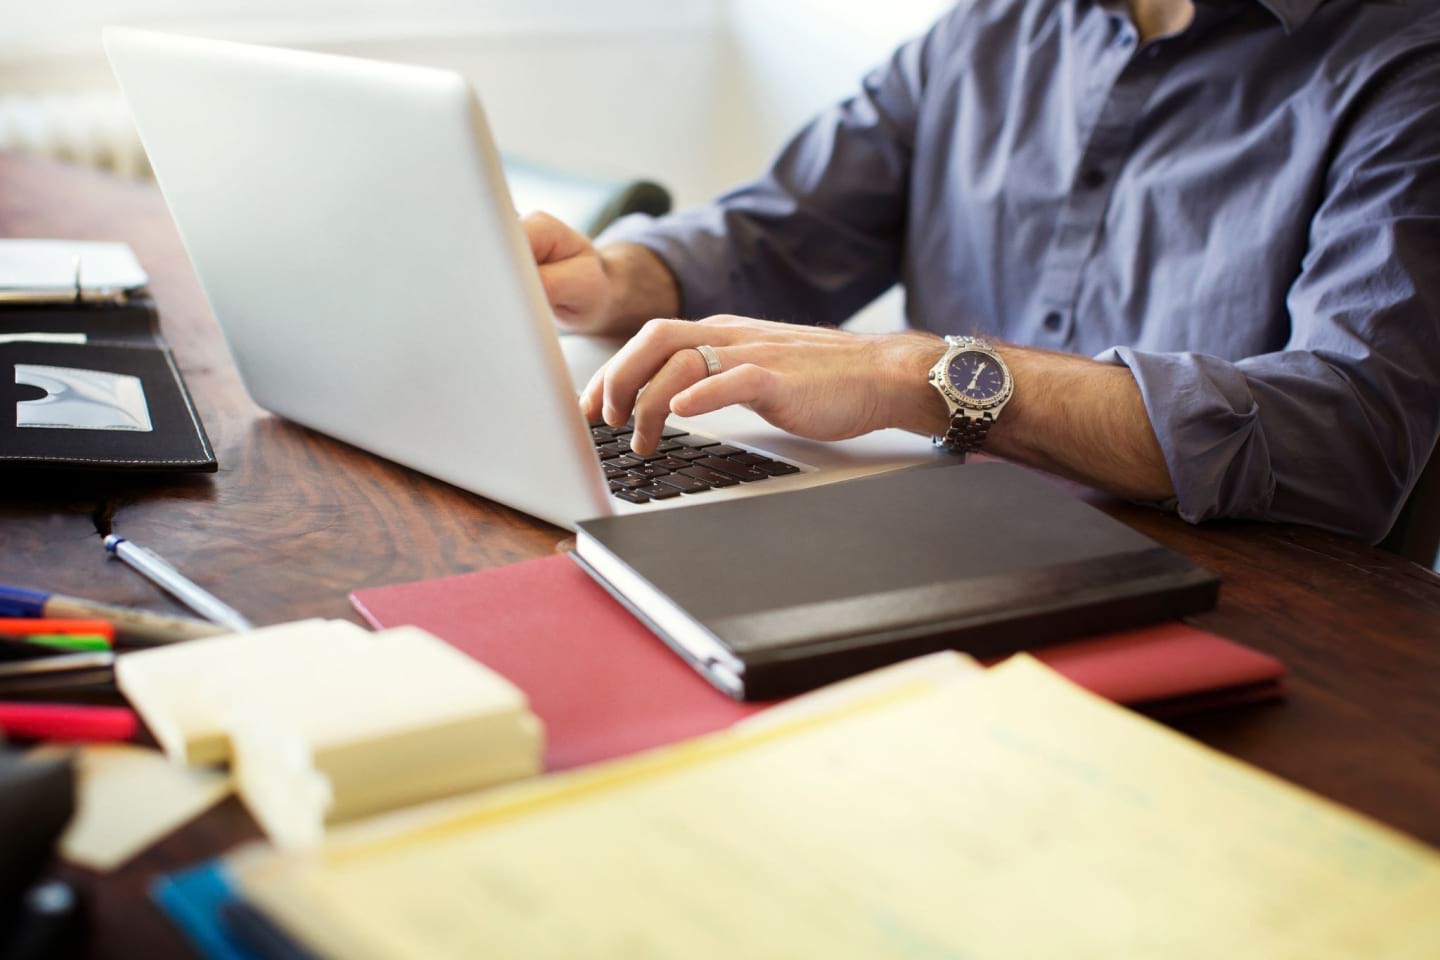 Una persona lavora sul laptop alla scrivania, su cui sono presenti penne, post-it e quaderni